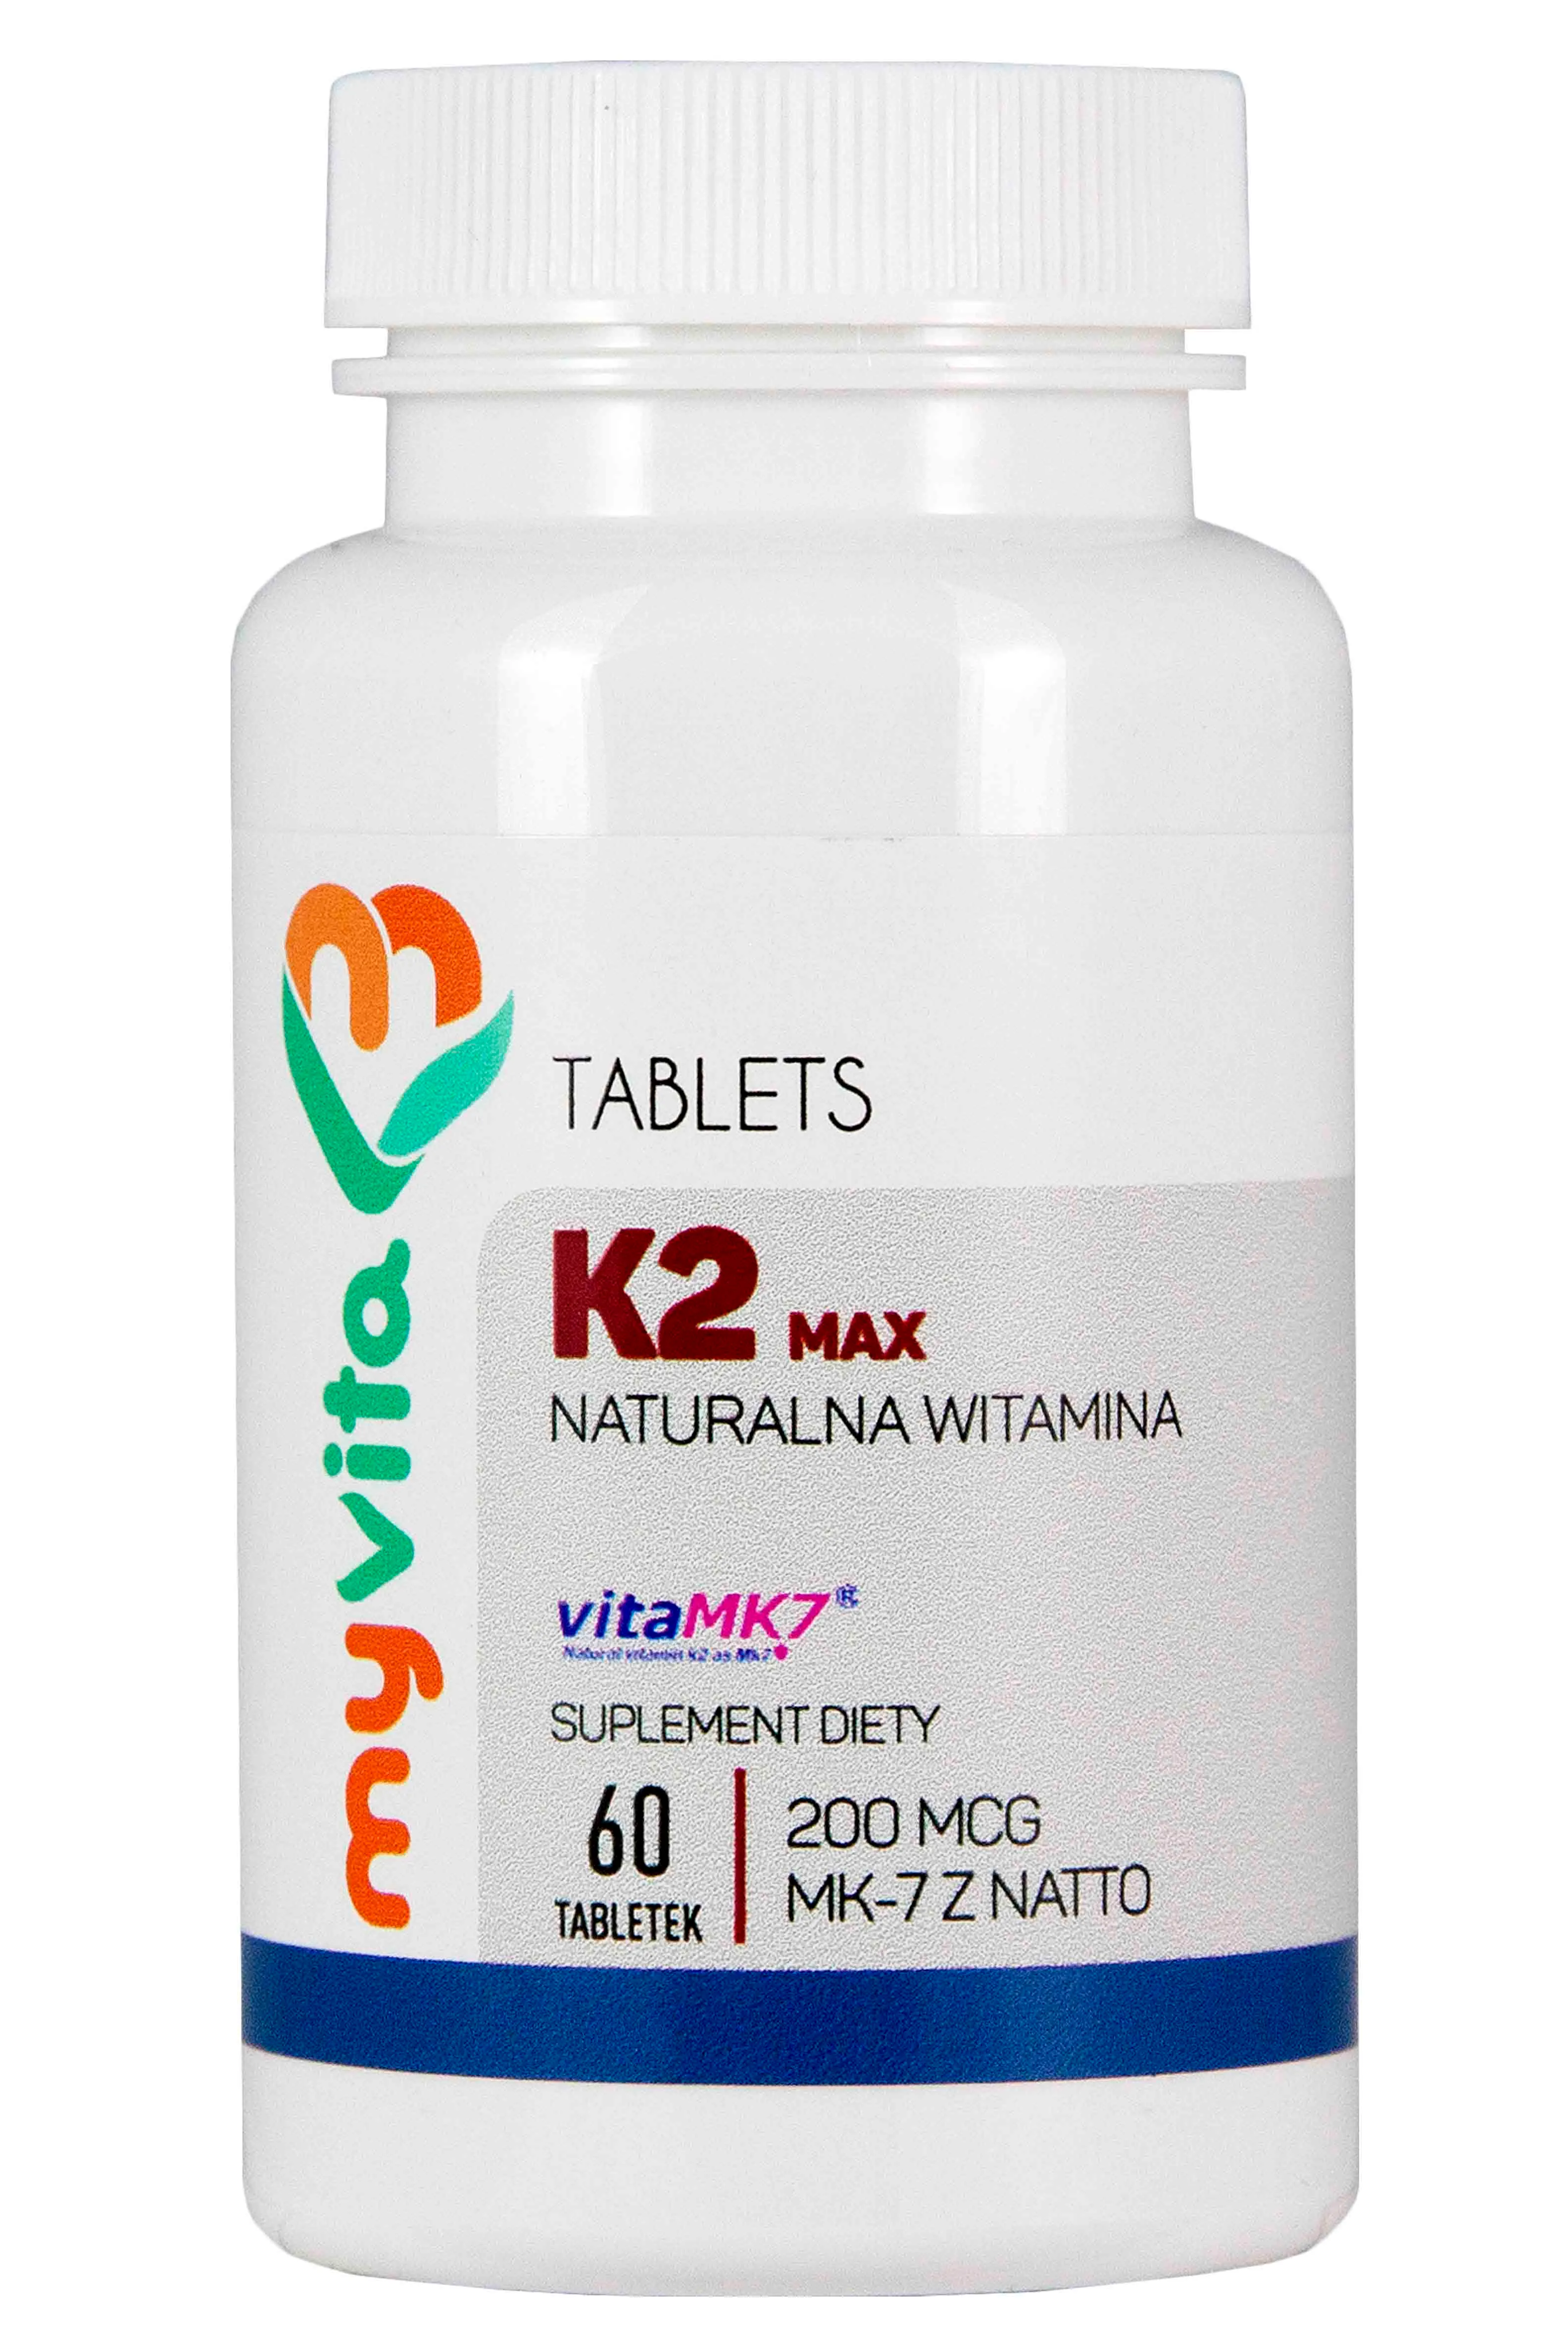 MyVita, Naturalna witamina K2 200mcg Max, suplement diety, 60 tabletek